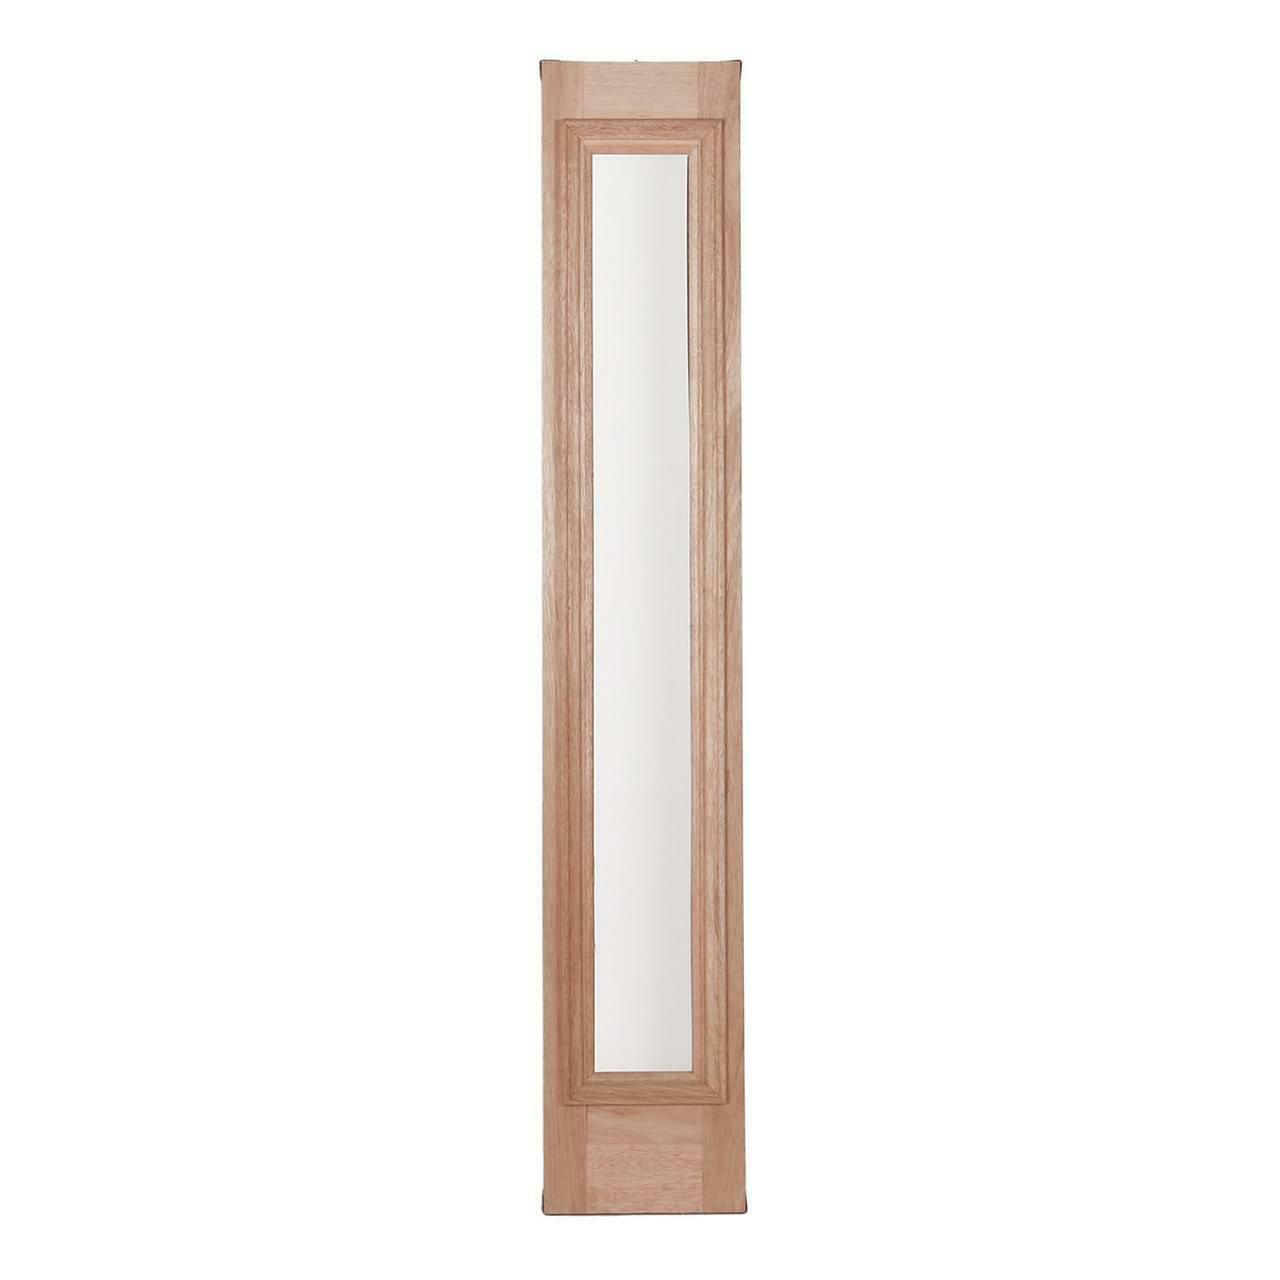 Solid Wood Mahogany 36 Single Oval Pre-Hung Exterior Door